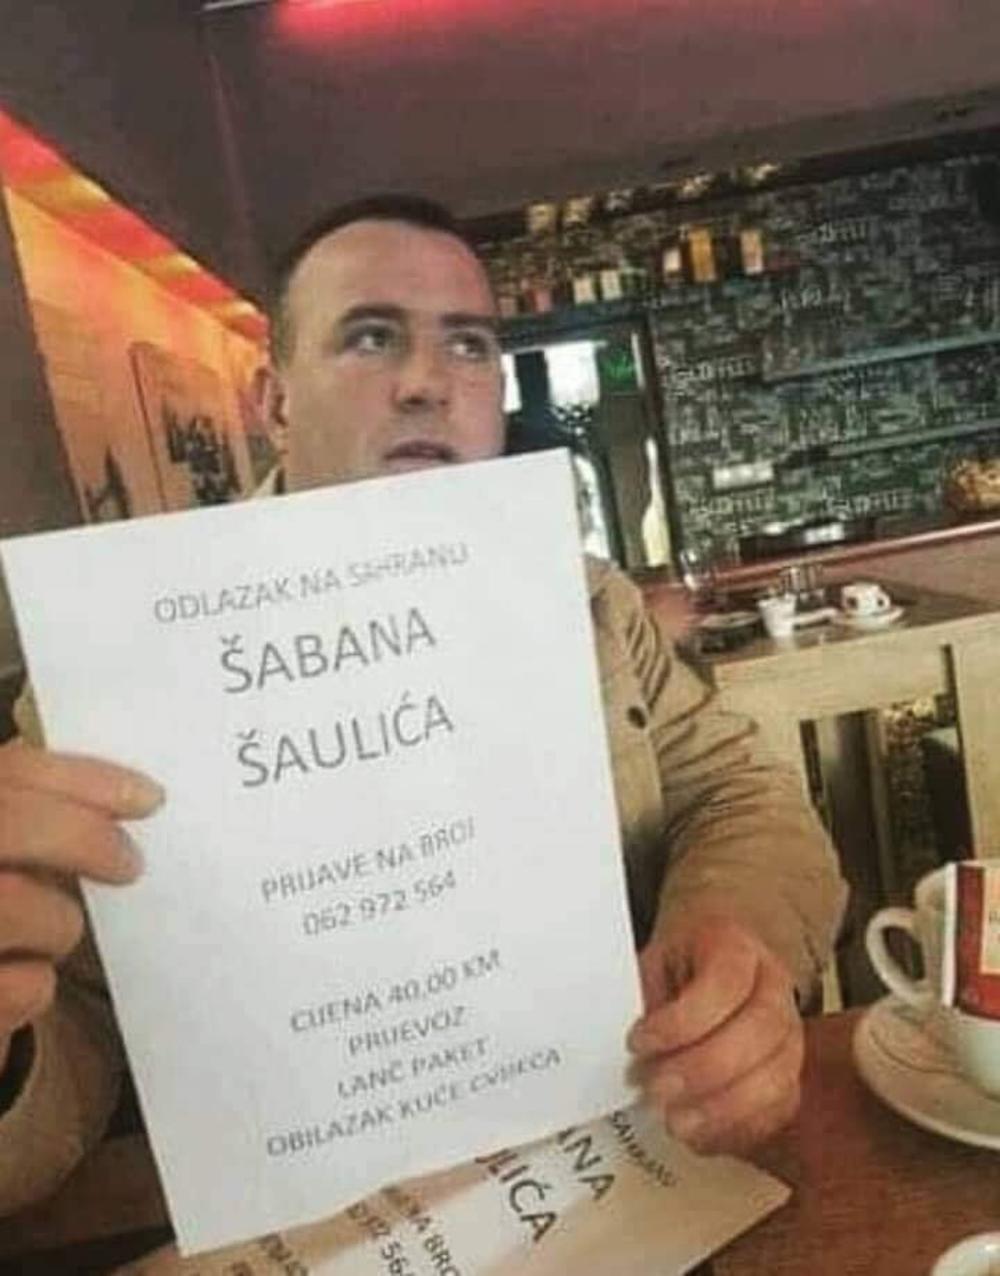 Irfan organizuje odlazak na sahranu Šabana Šaulića  